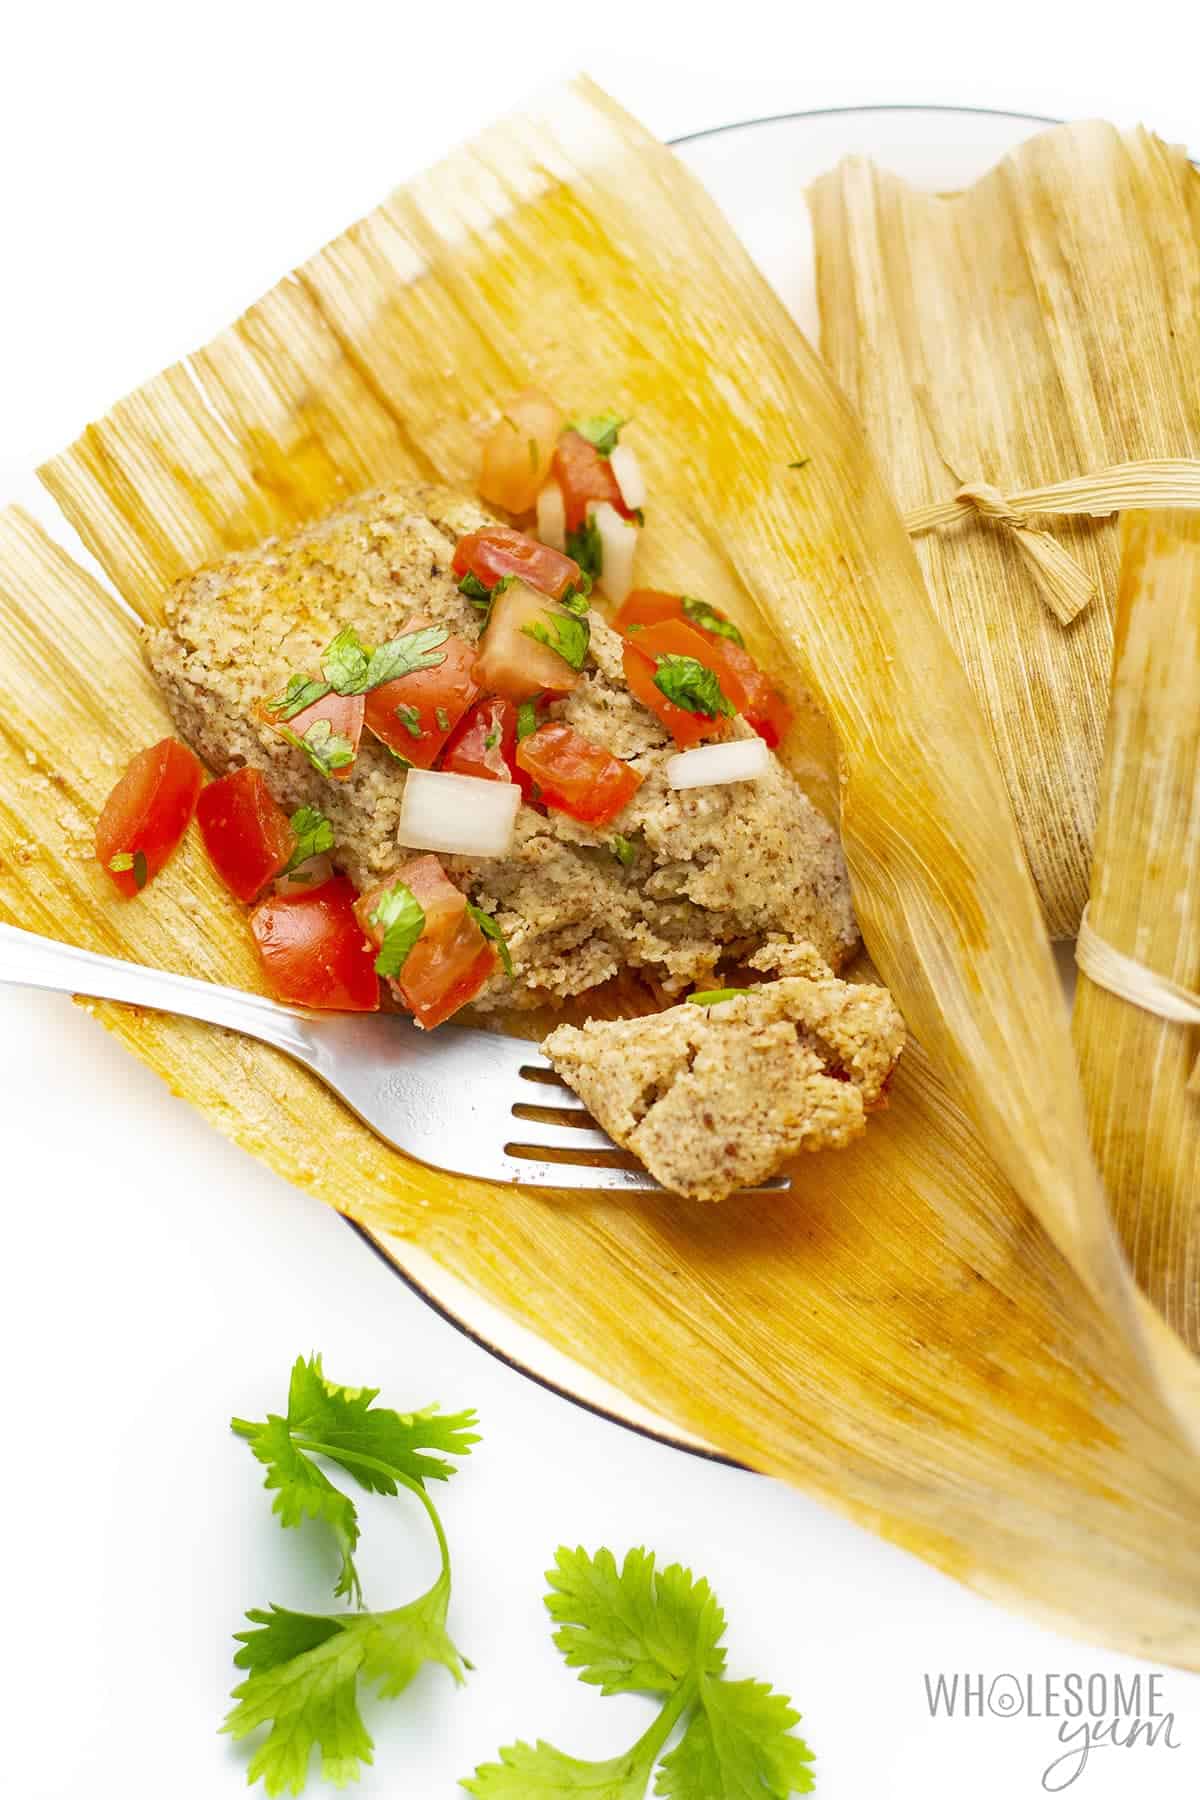 Keto tamale on a plate with pico de gallo.